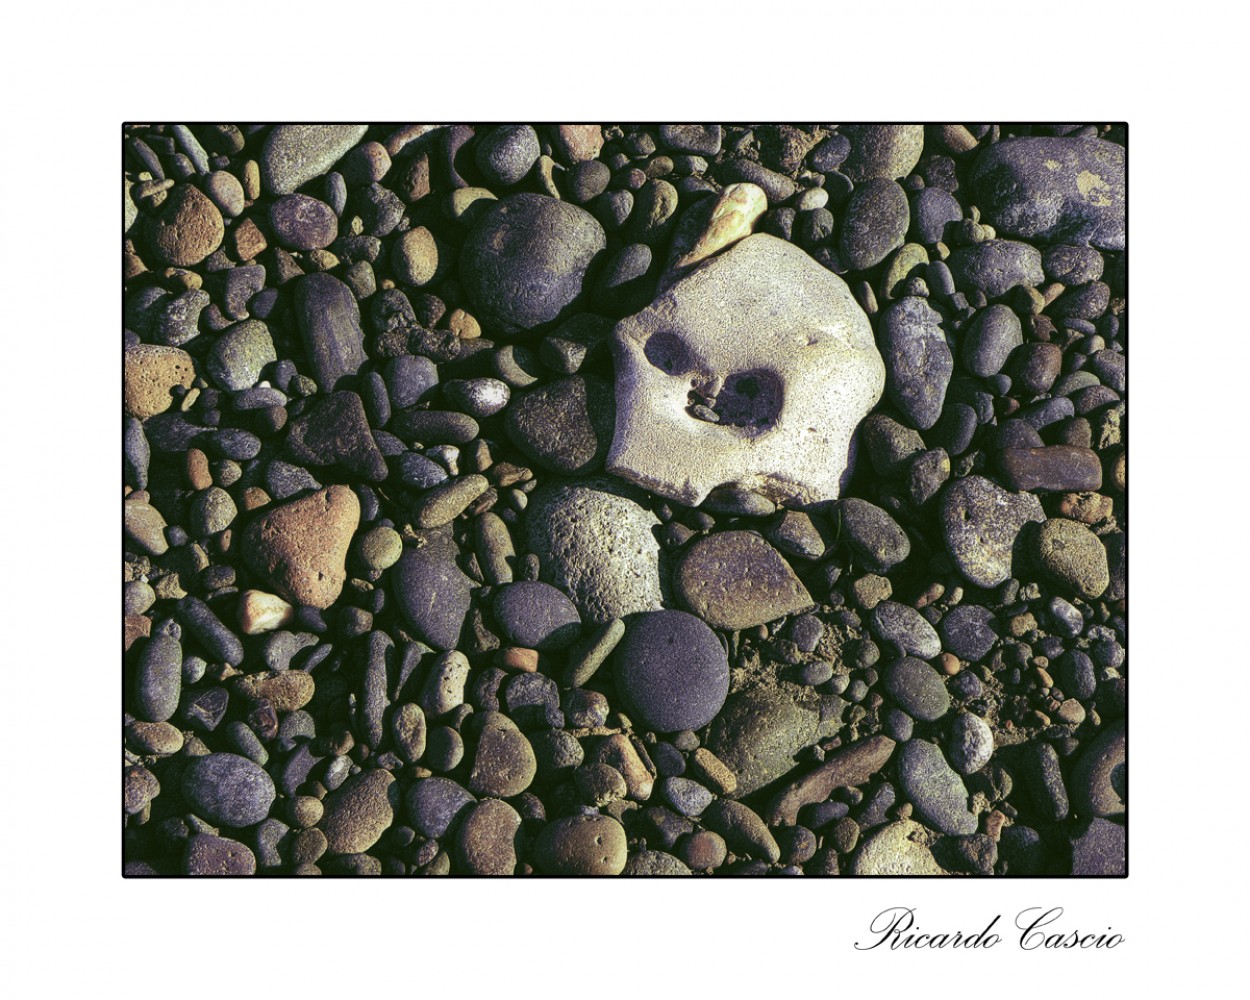 "Las piedras y la muerte" de Ricardo Cascio